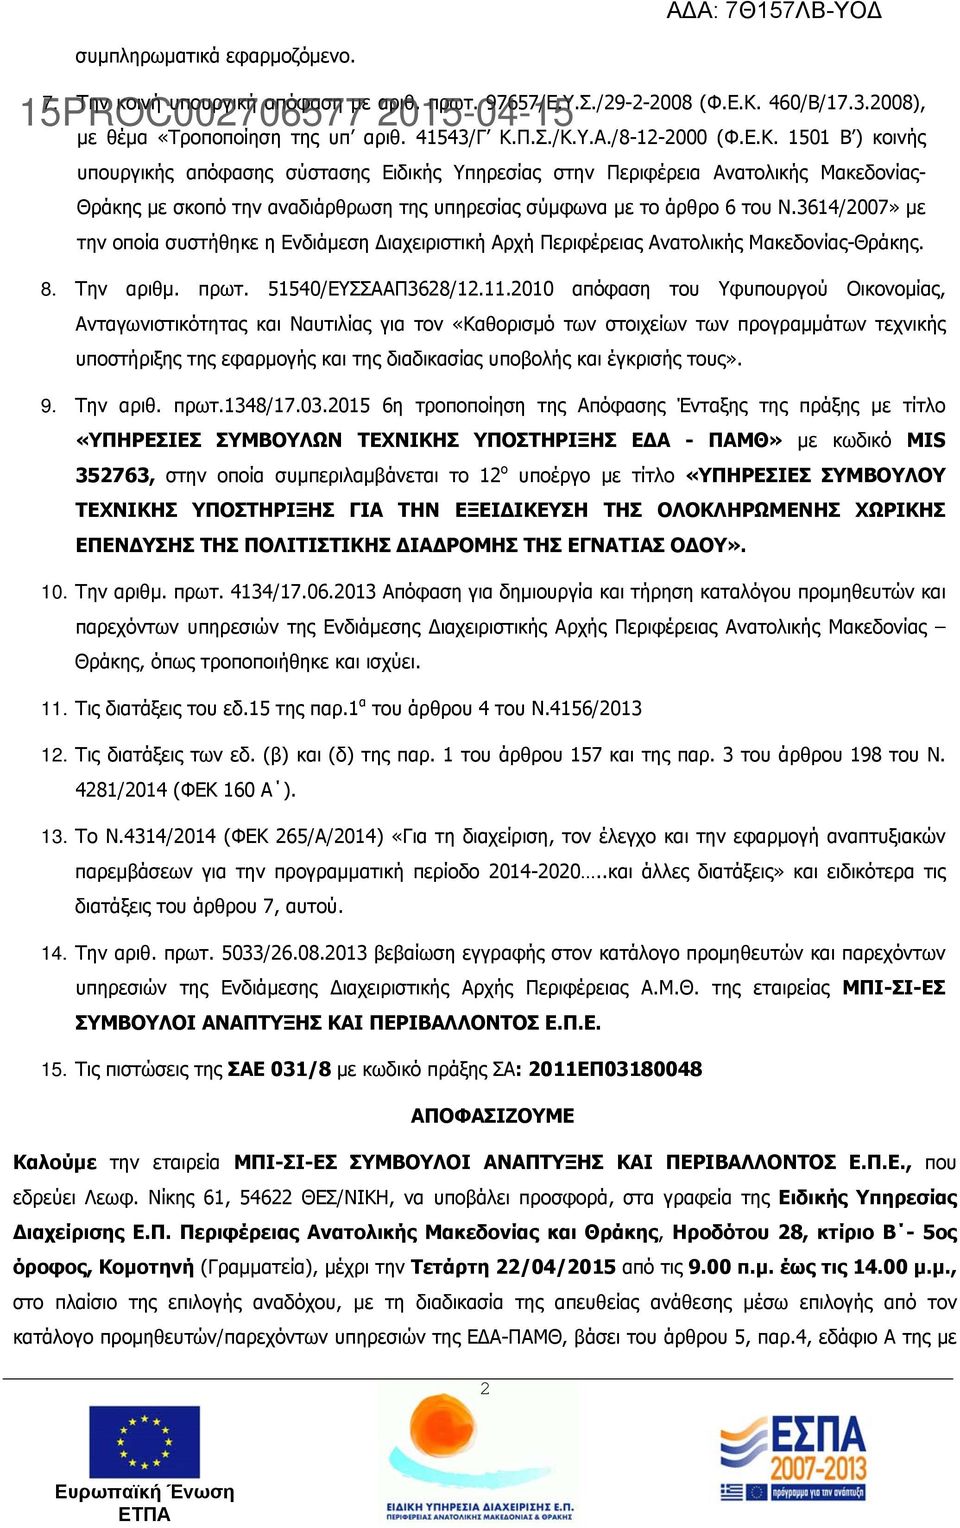 Π.Σ./Κ.Υ.Α./8-12-2000 (Φ.Ε.Κ. 1501 Β ) κοινής υπουργικής απόφασης σύστασης Ειδικής Υπηρεσίας στην Περιφέρεια Ανατολικής Μακεδονίας- Θράκης με σκοπό την αναδιάρθρωση της υπηρεσίας σύμφωνα με το άρθρο 6 του Ν.